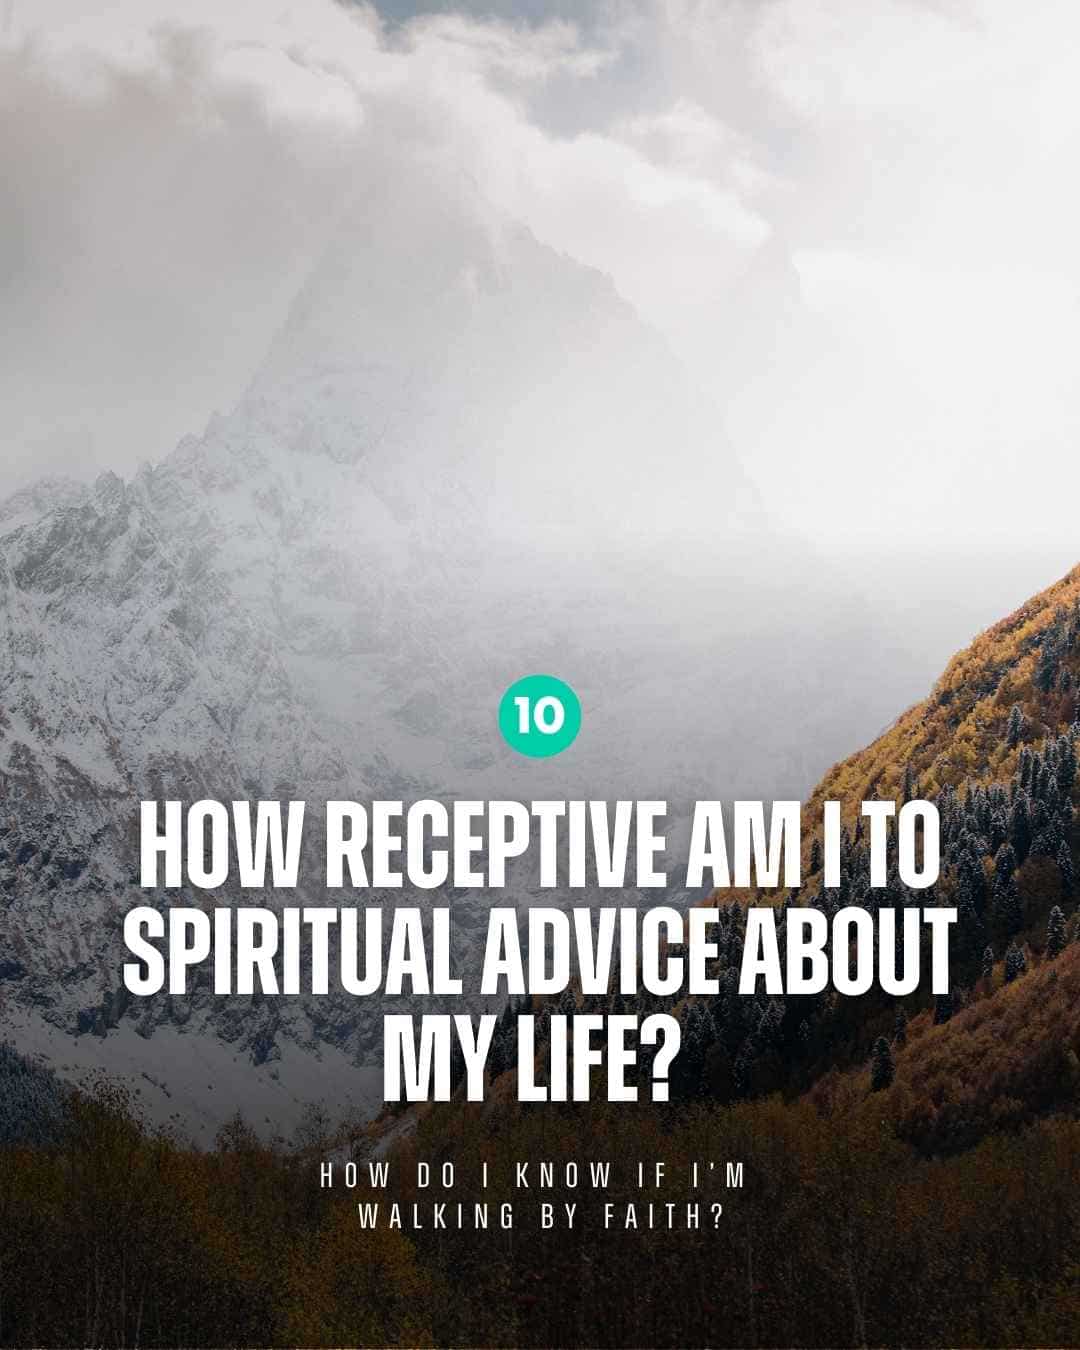 walk by faith - how receptive am I?